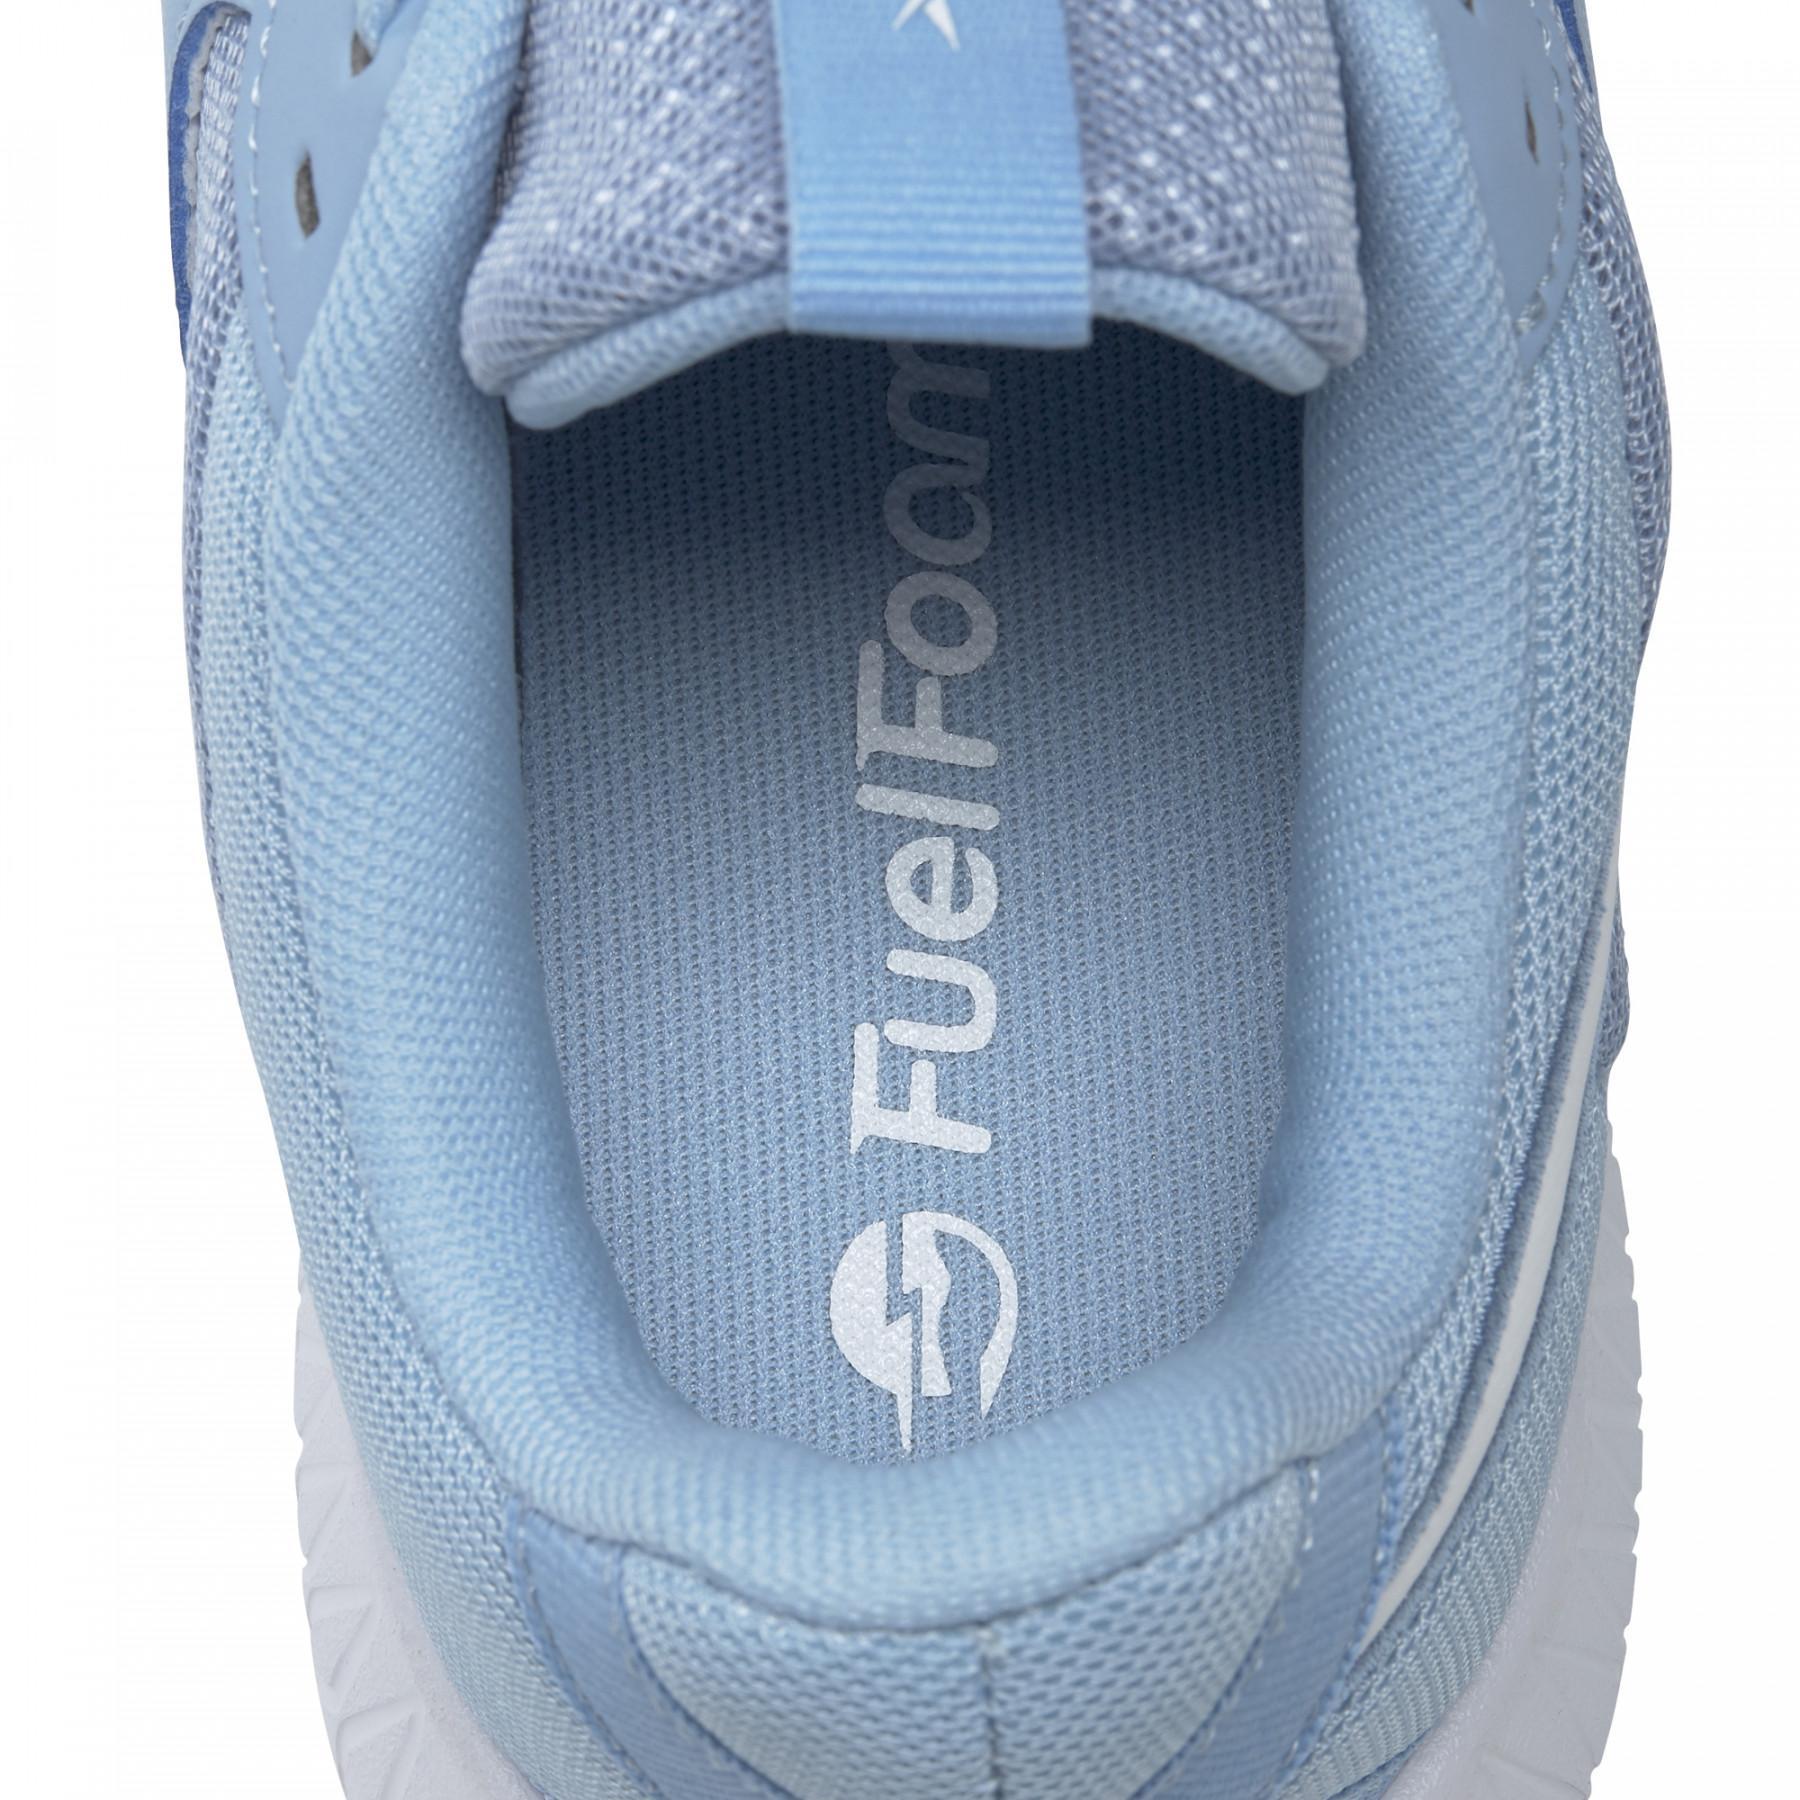 Women's sneakers Reebok Flexagon Energy Trail 2